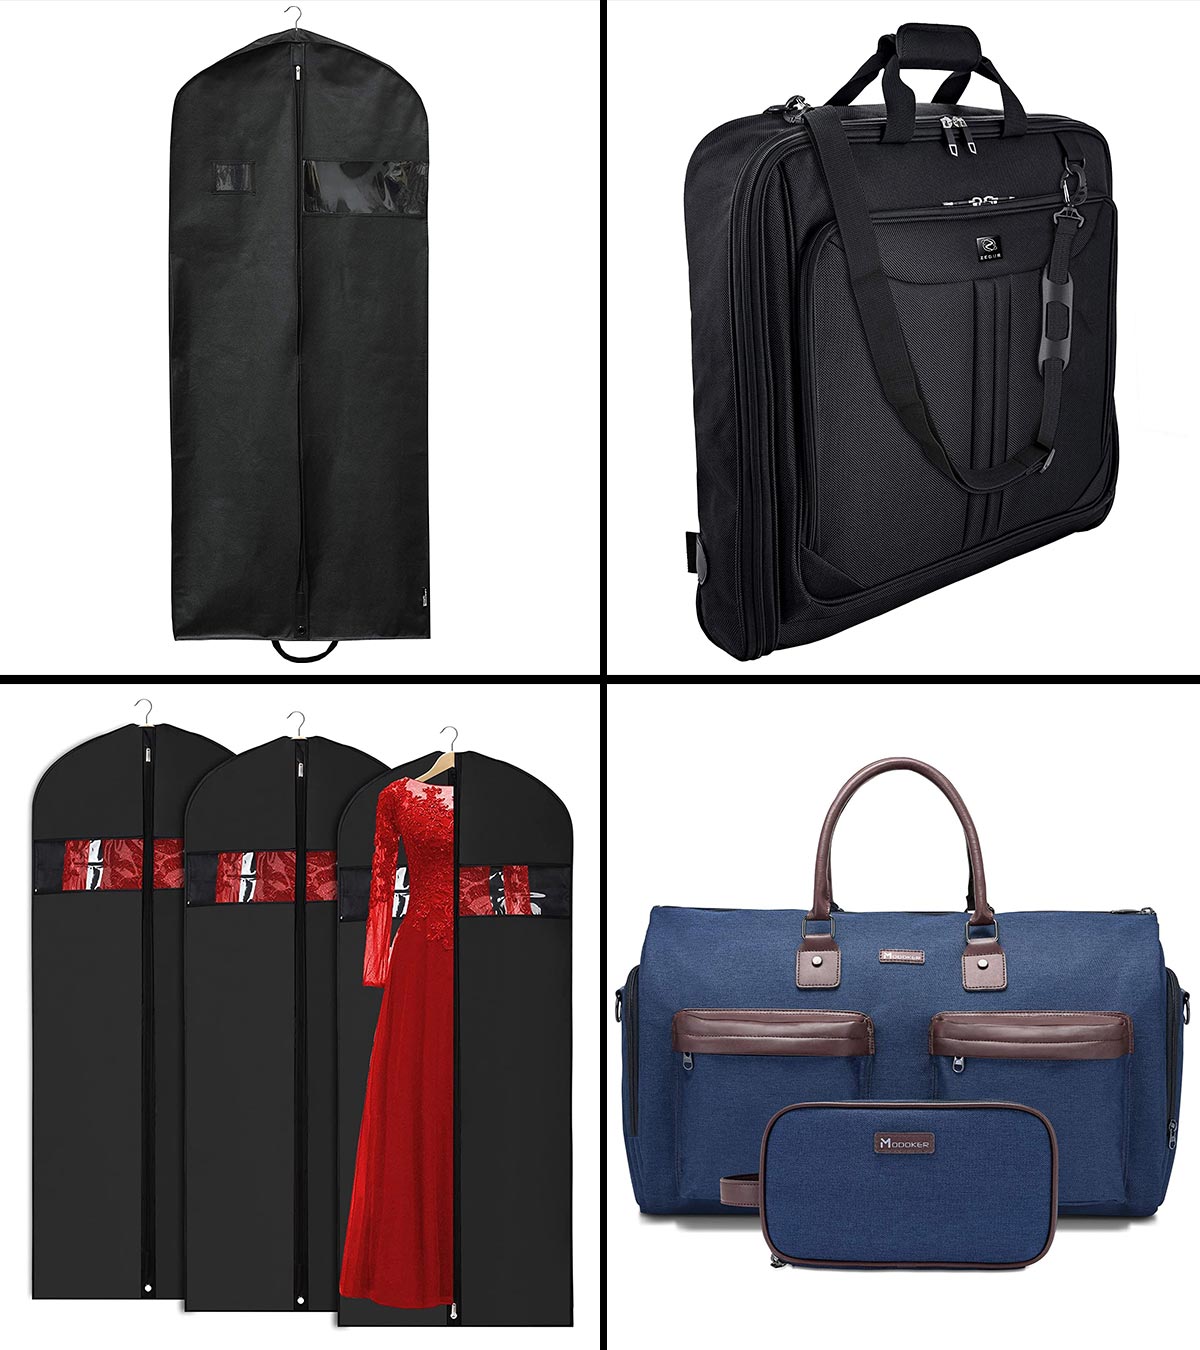 https://www.momjunction.com/wp-content/uploads/2021/09/15-Best-Garment-Bags-For-Travel-In-2021-Banner-MJ.jpg